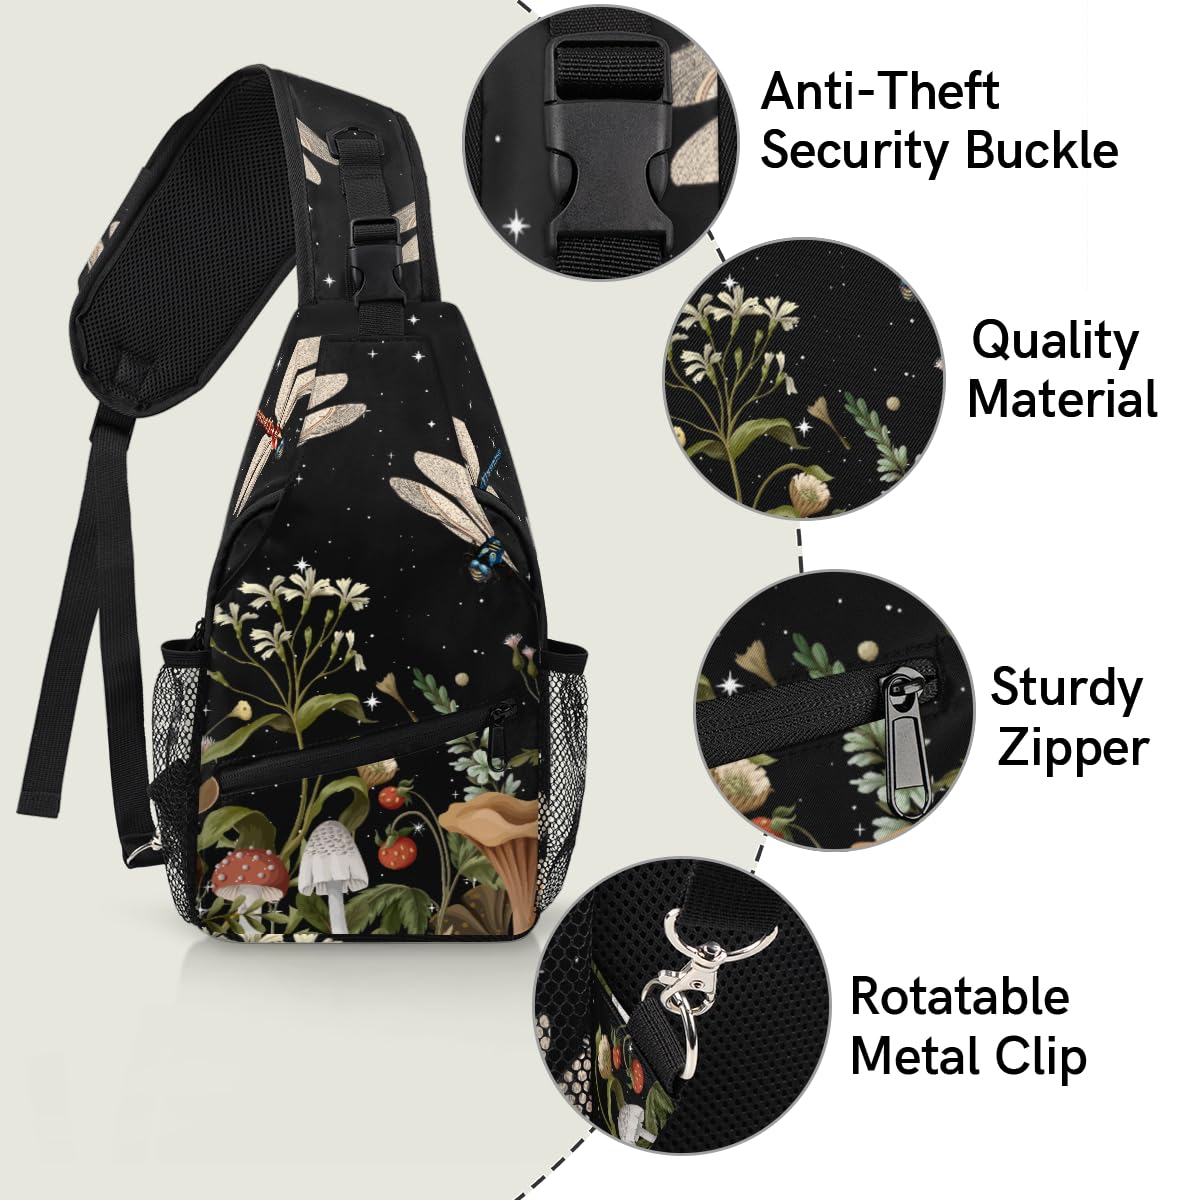 Animal Dragonfly Sling Bag Crossbody Sling Backpack Water Resistant Shoulder Bag Outdoor Travel Hiking Chest Bag Daypack for Women Men Unisex